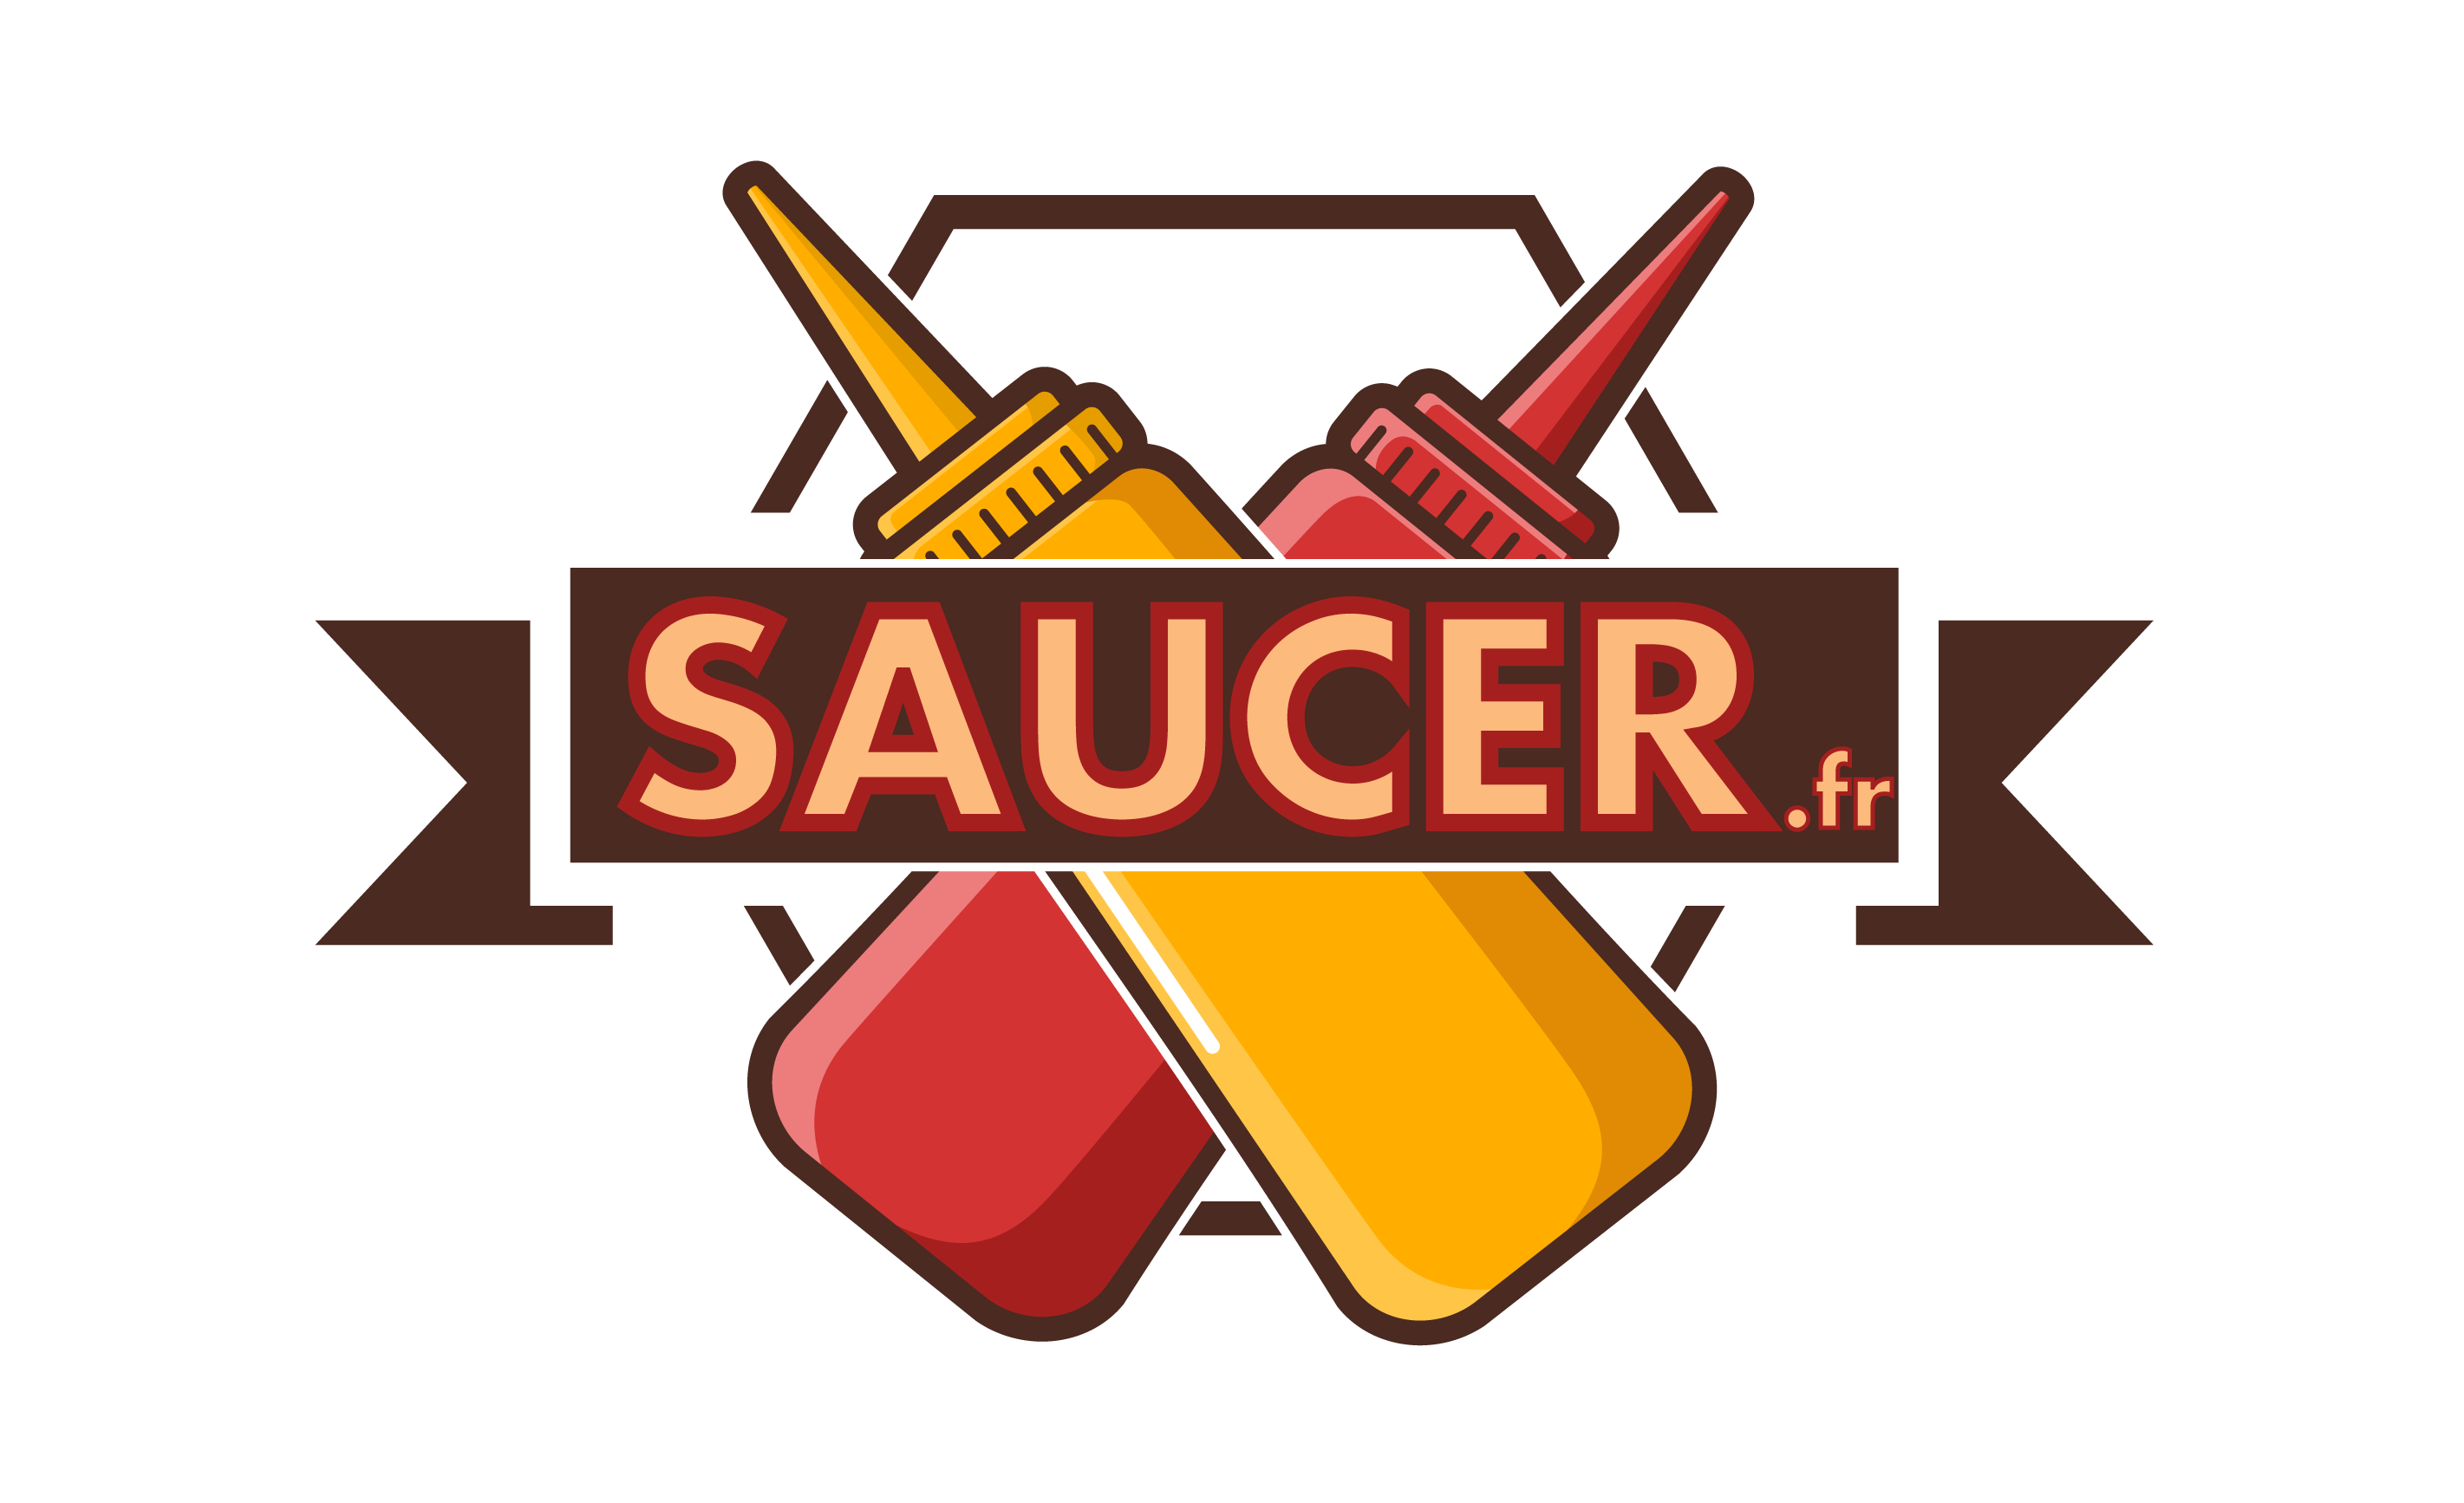 Saucer.fr